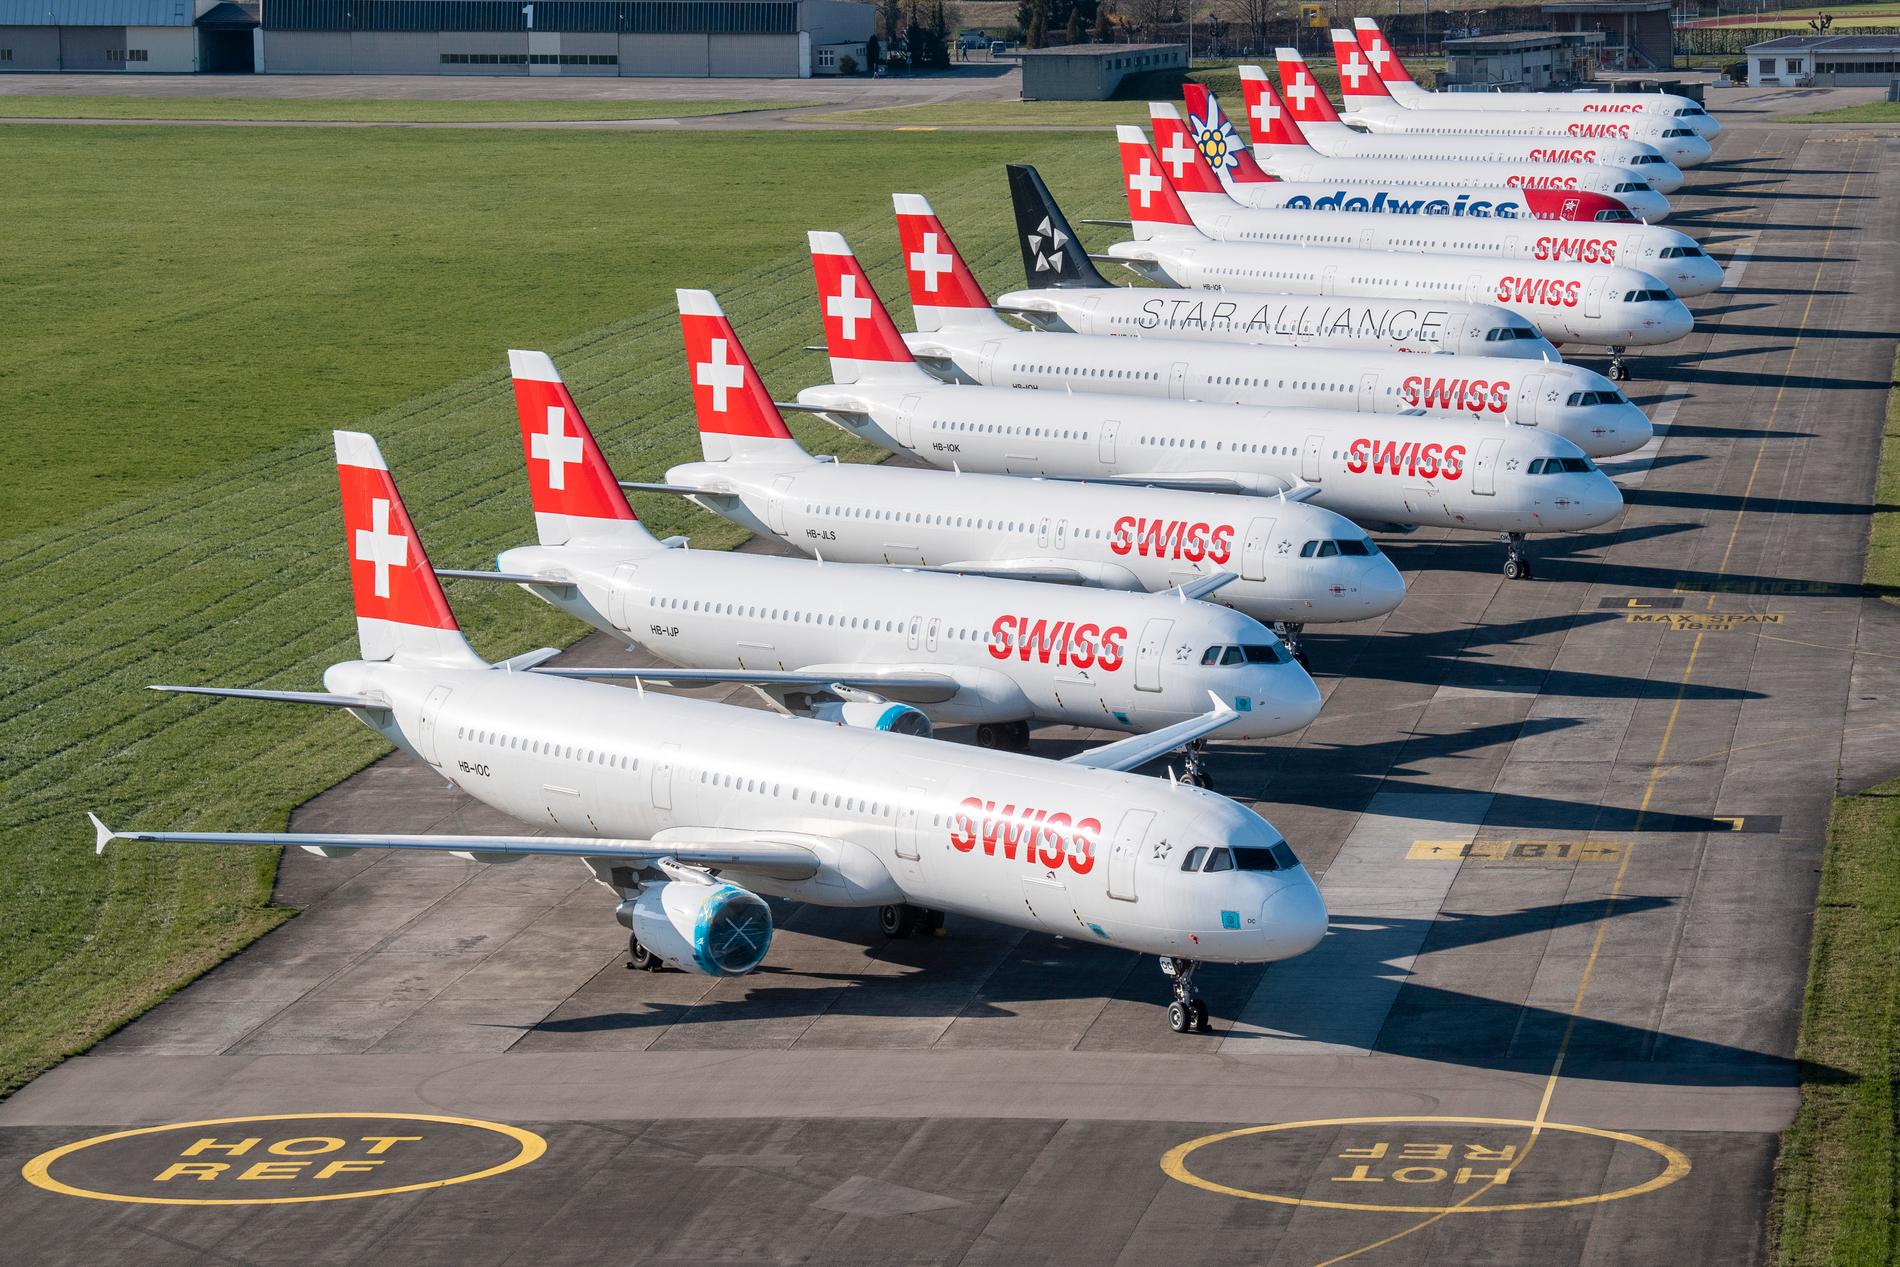 DUEBENDORF, SCHWEIZ Större delen av flygbolaget Swiss flotta står parkerad och stilla, här vid flygplatsen i Duebendorf på måndagen.